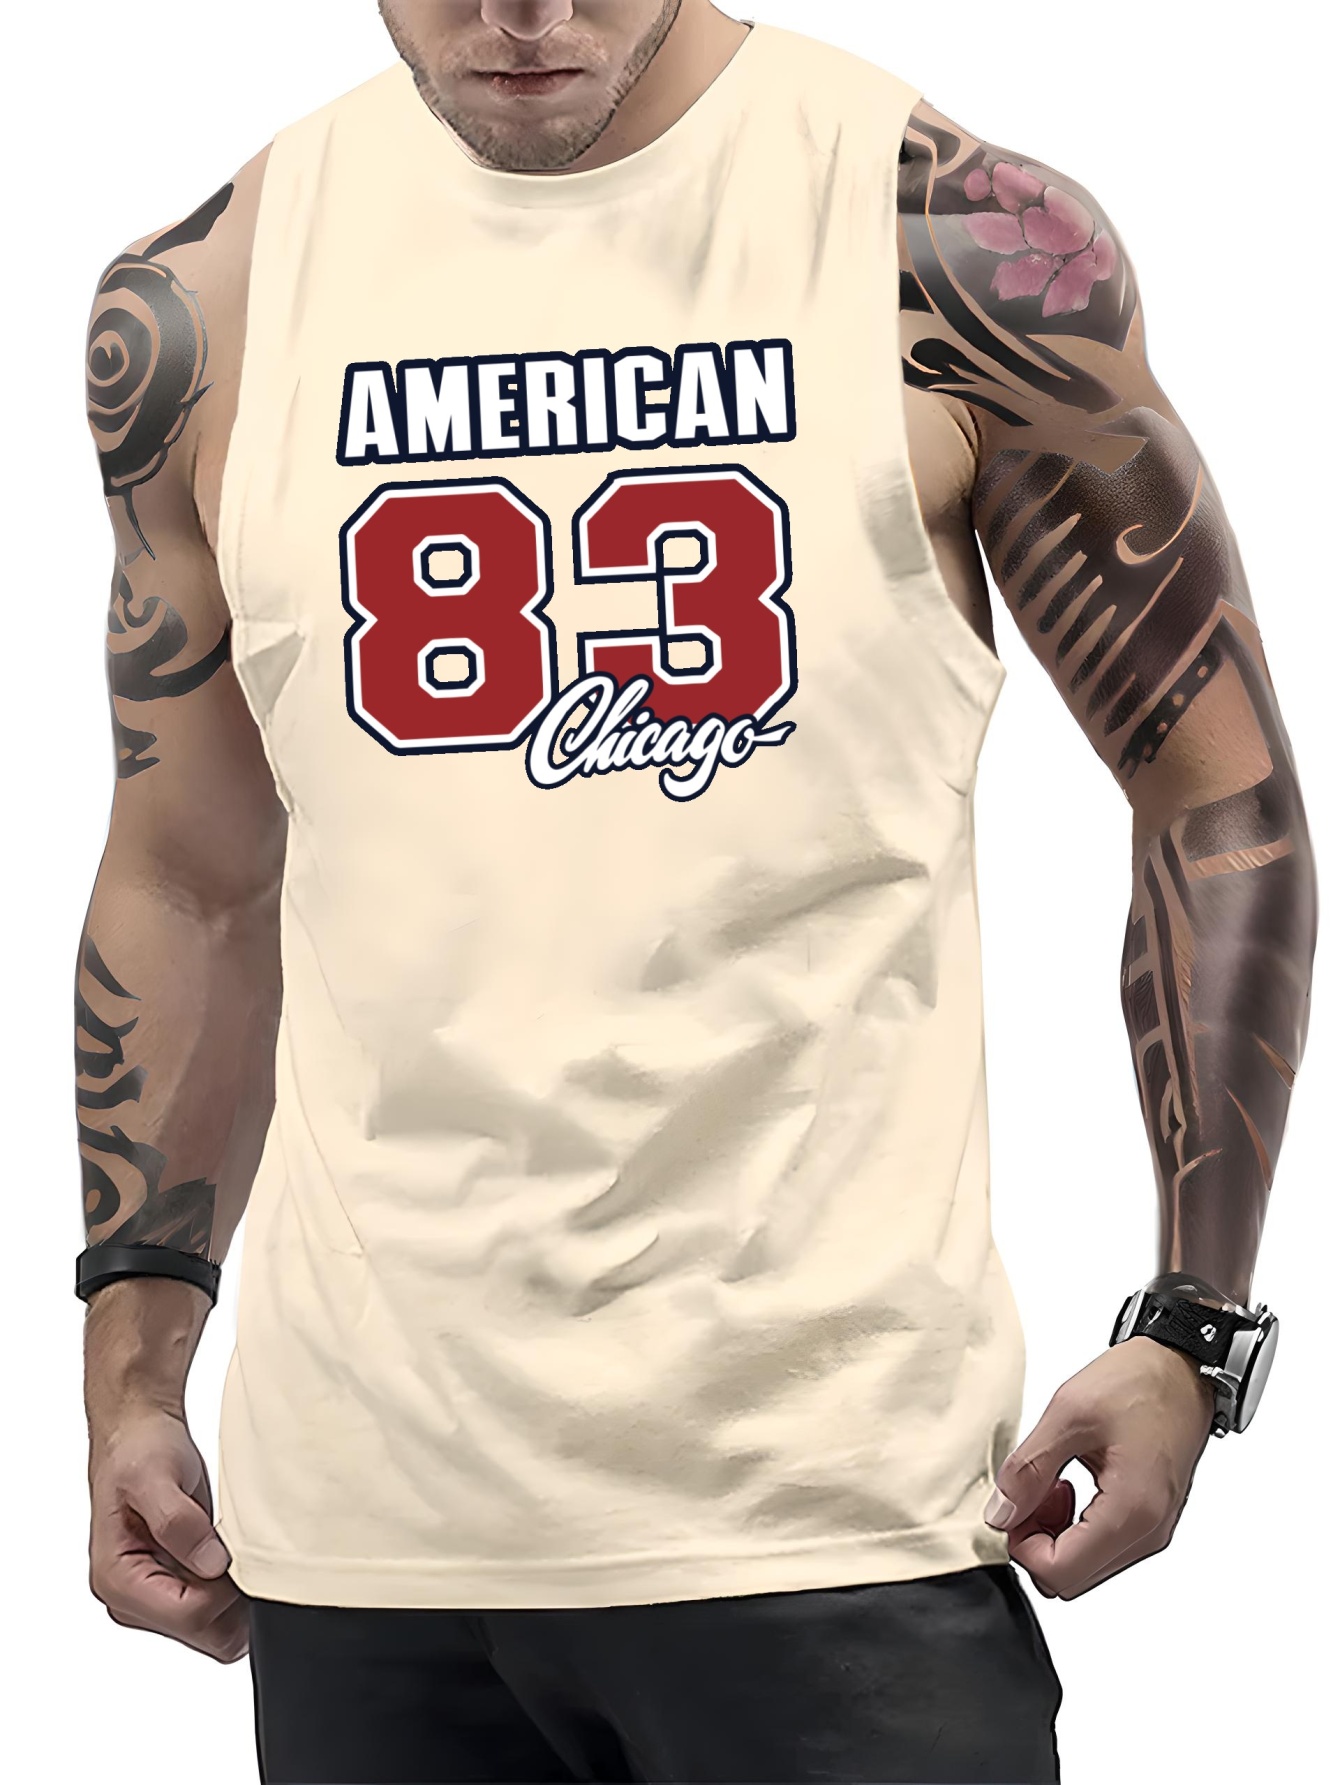  American Casual Camisetas sin mangas para hombre